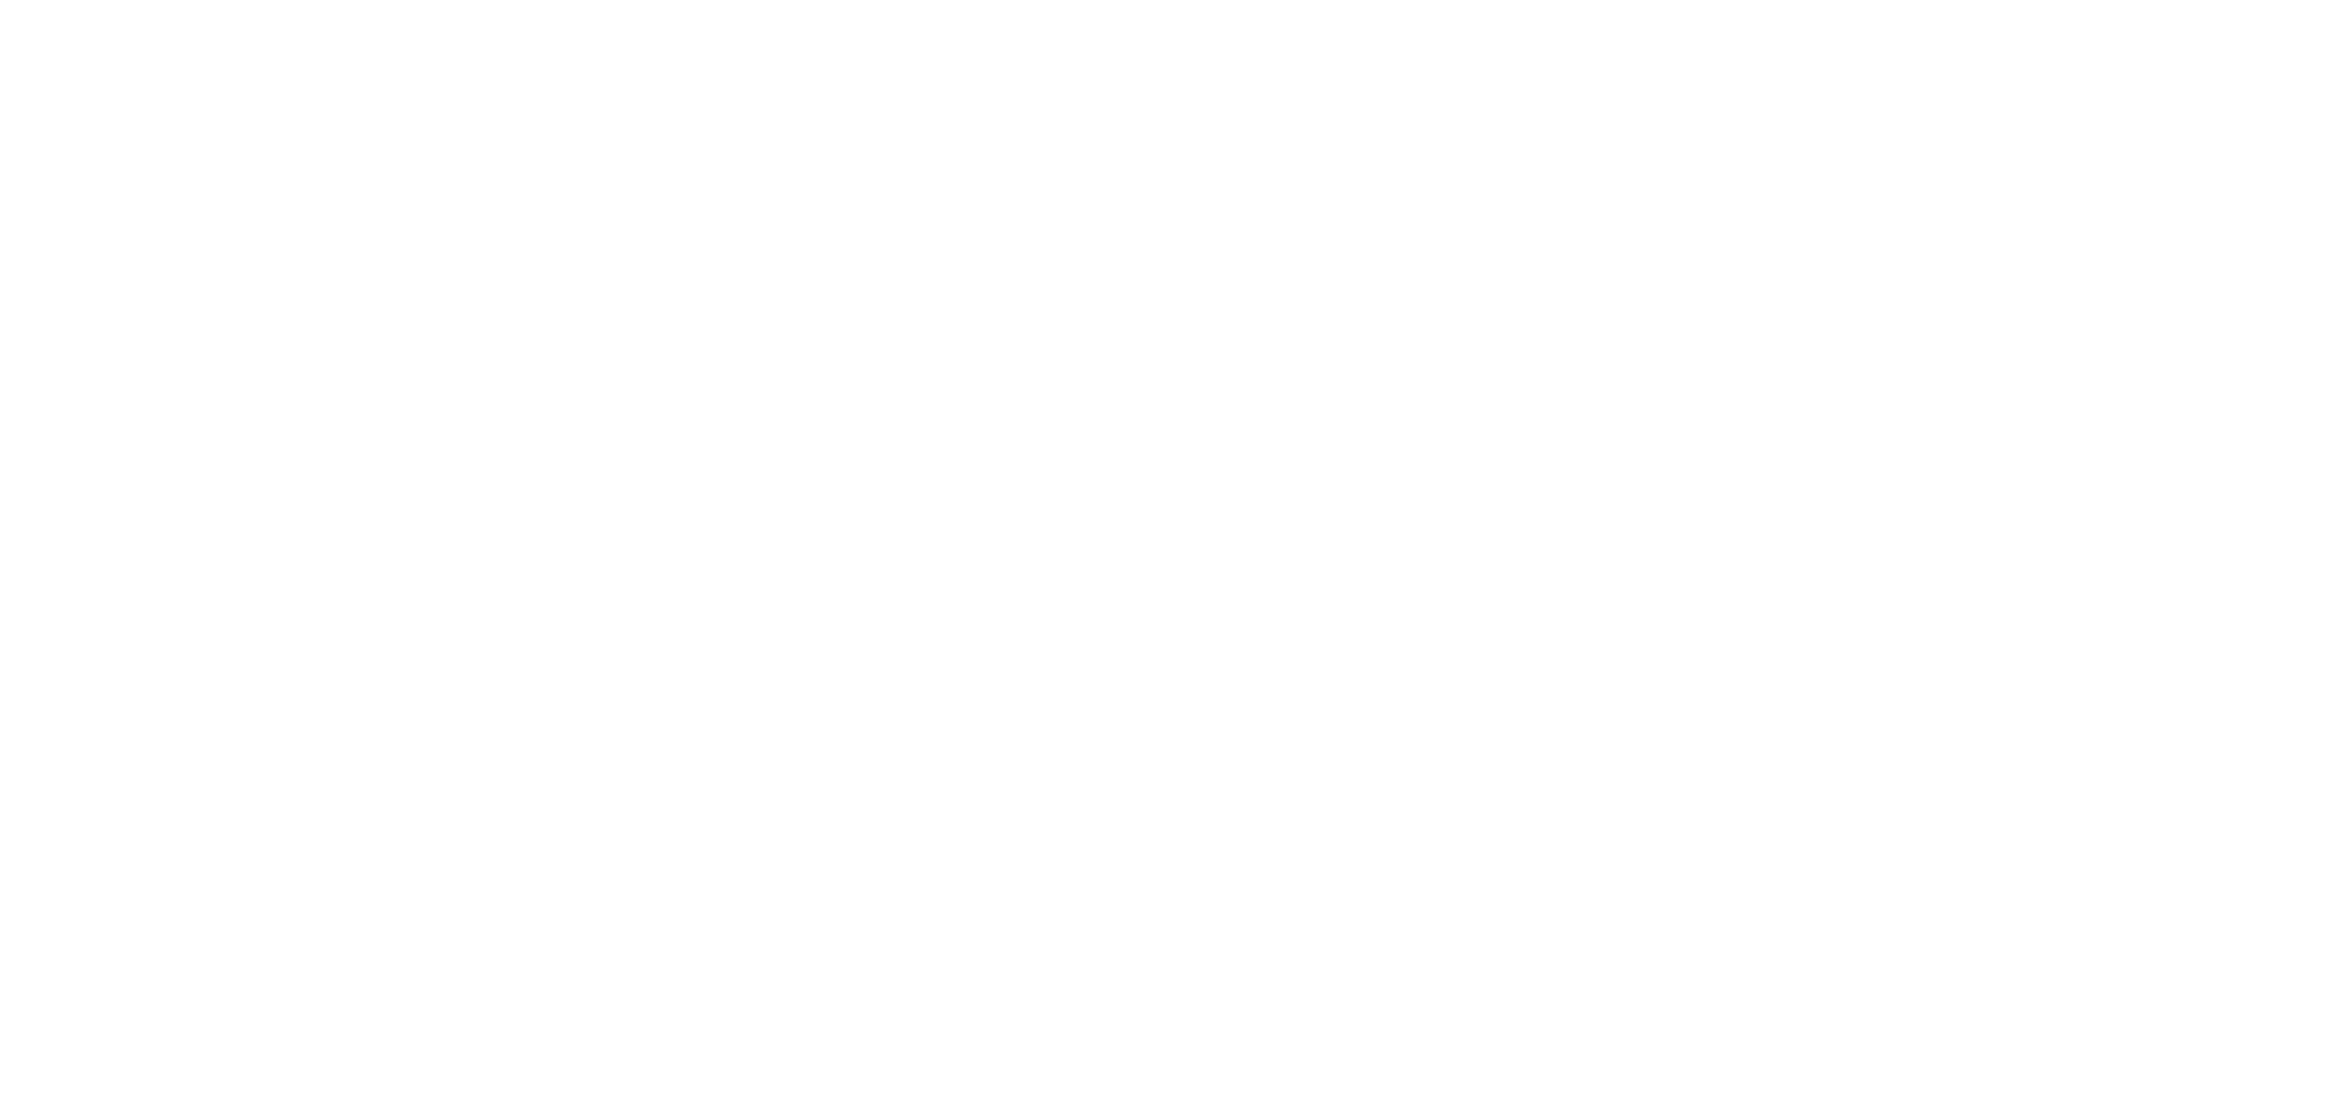 KIO_logo_white